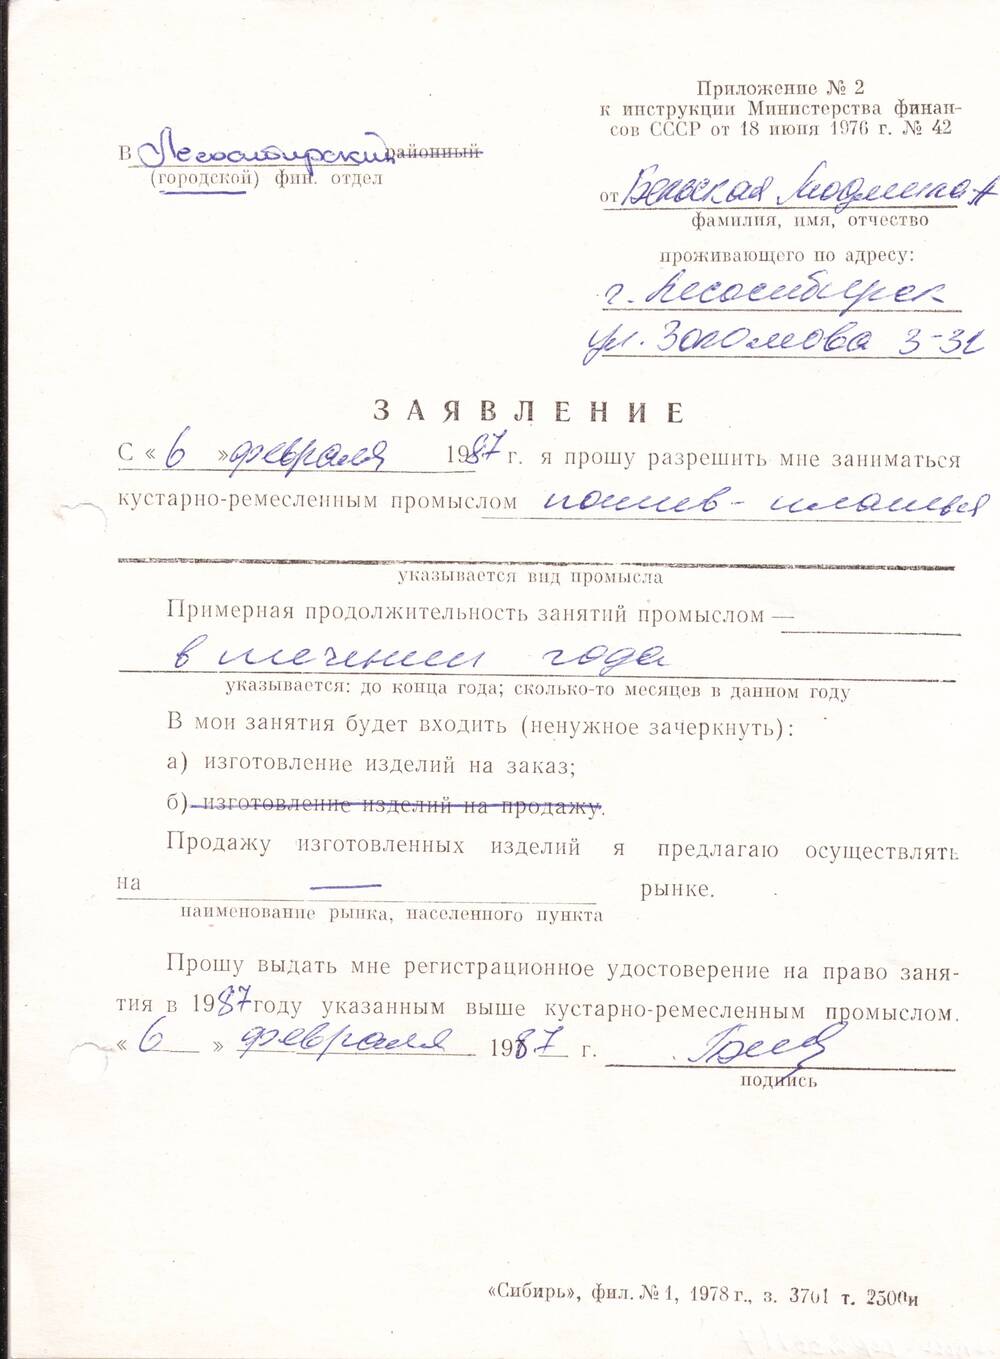 Заявление от 06.02.1987г о разрешении заниматься кустарно-ремесленным промыслом на 1987г Бельской Людмилы Александровны